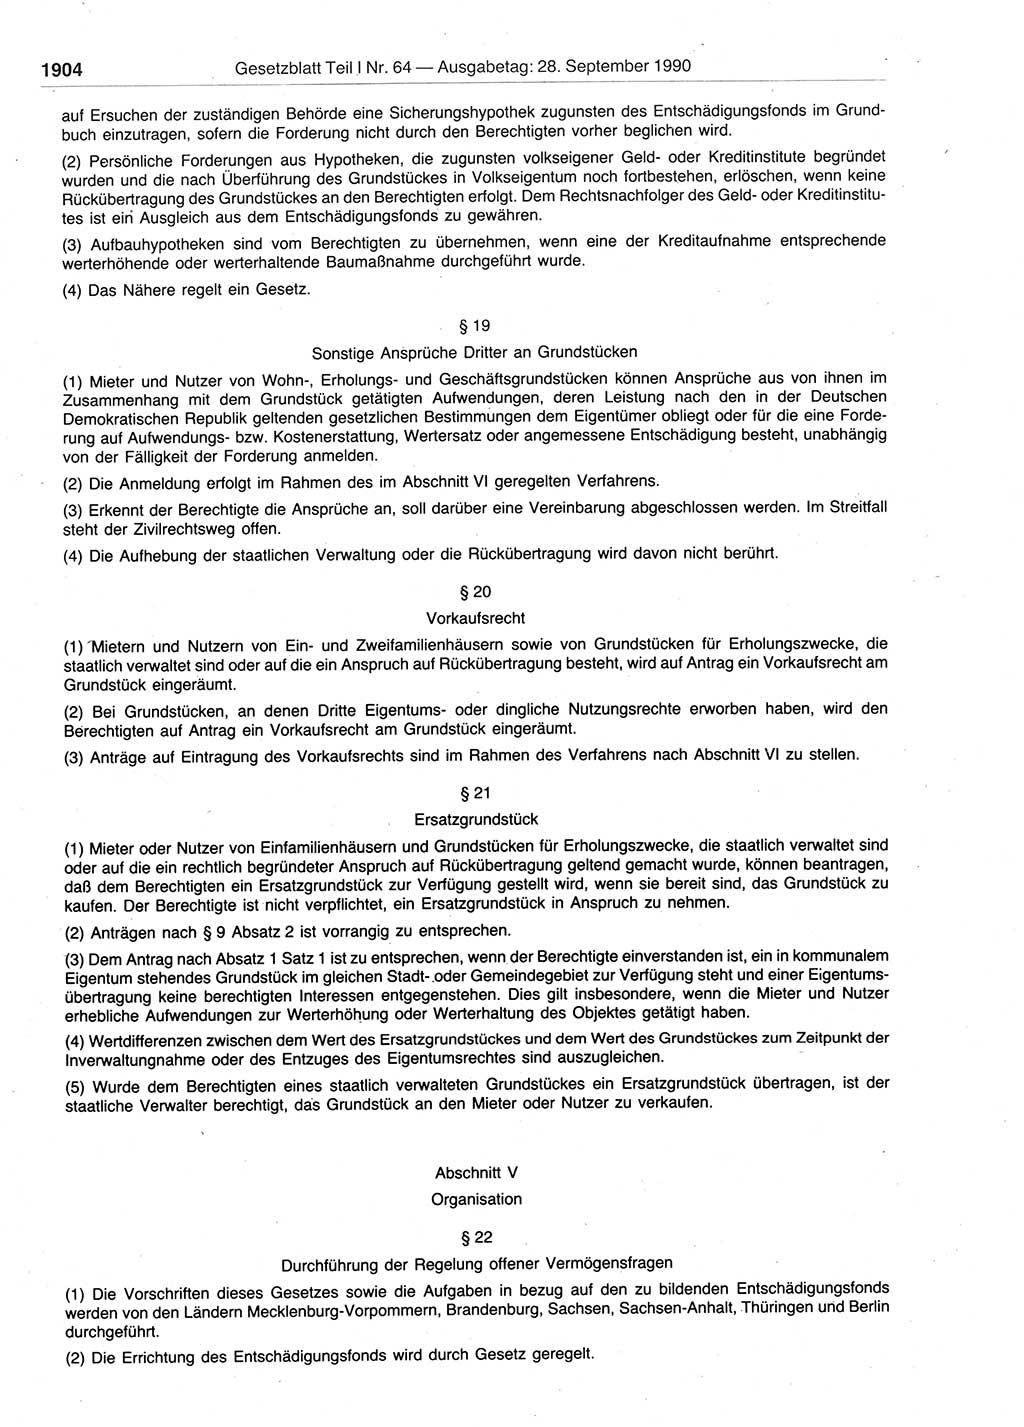 Gesetzblatt (GBl.) der Deutschen Demokratischen Republik (DDR) Teil Ⅰ 1990, Seite 1904 (GBl. DDR Ⅰ 1990, S. 1904)